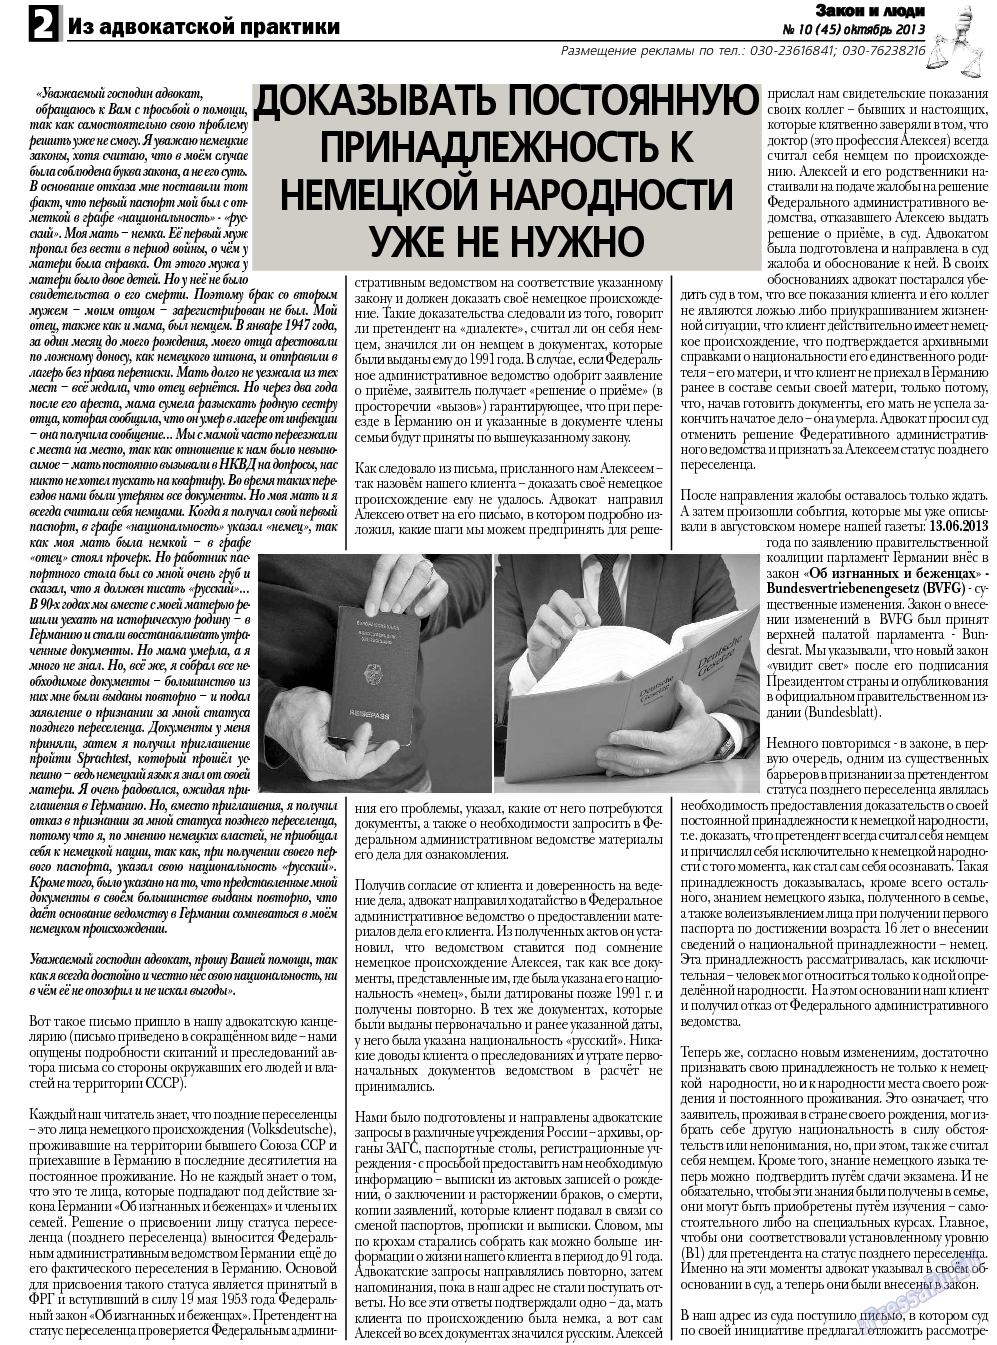 Закон и люди, газета. 2013 №10 стр.2